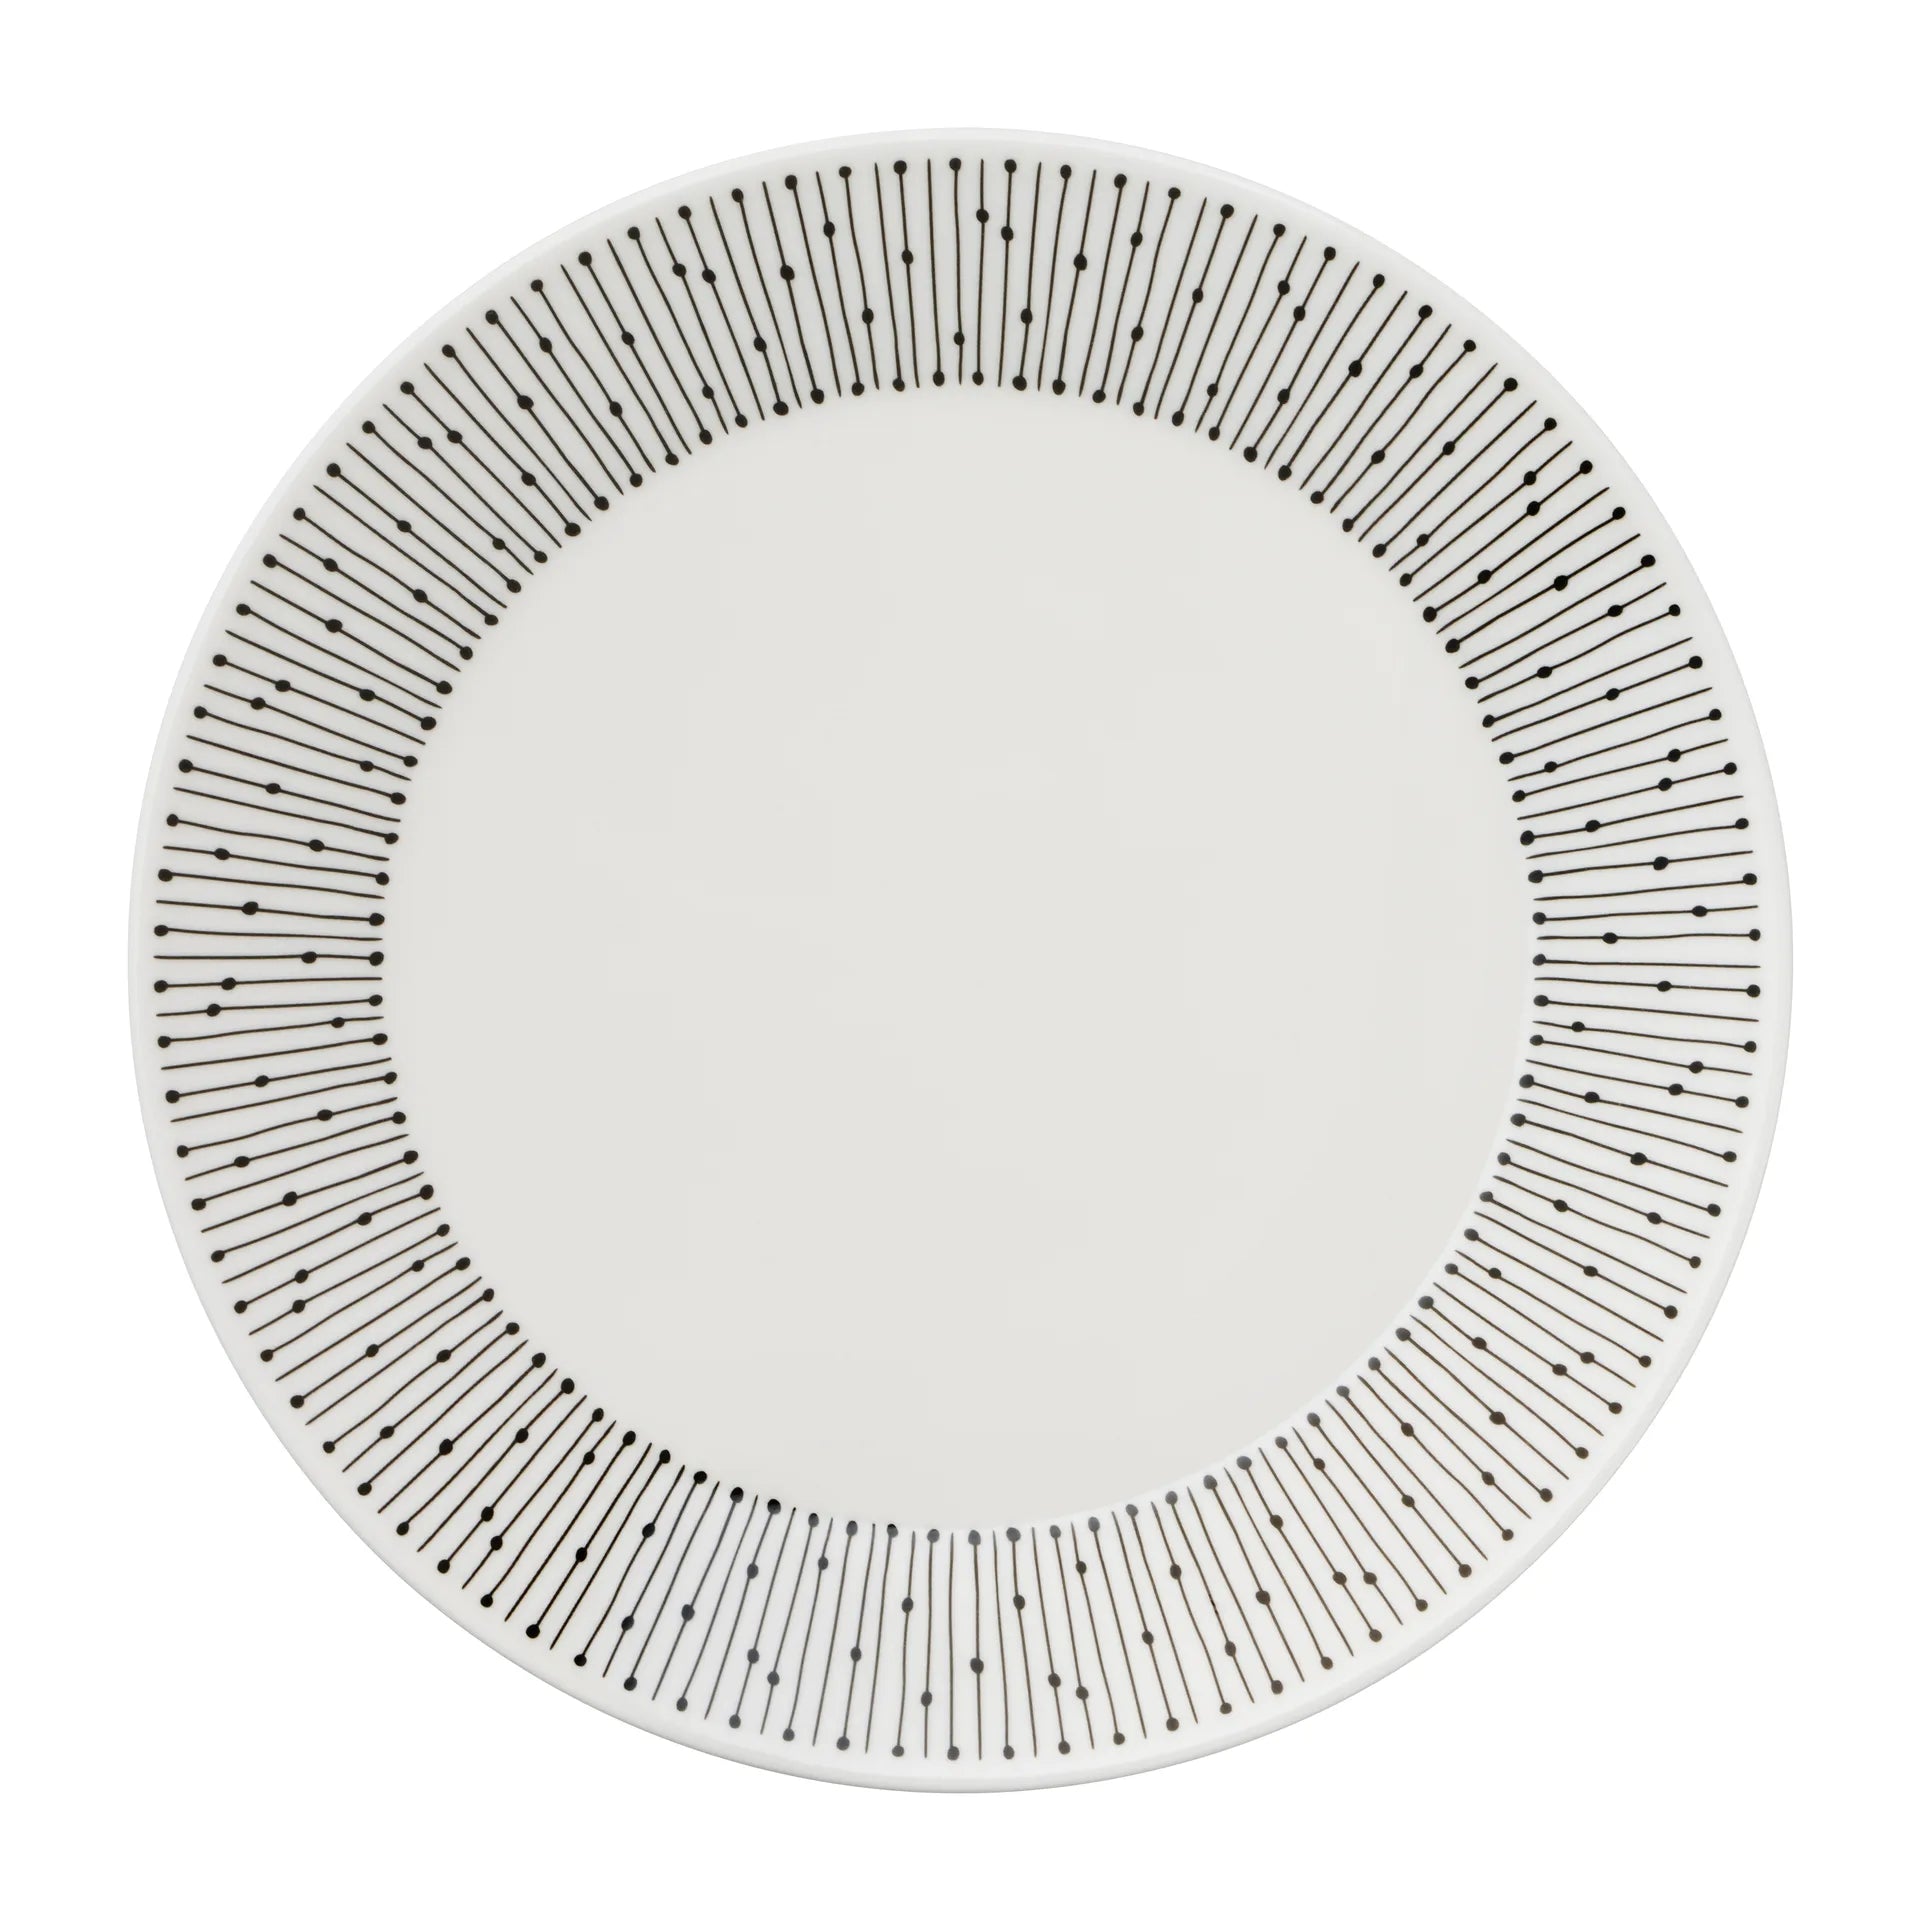 Mainio Sarastus plate Ø25 cm - Black-white